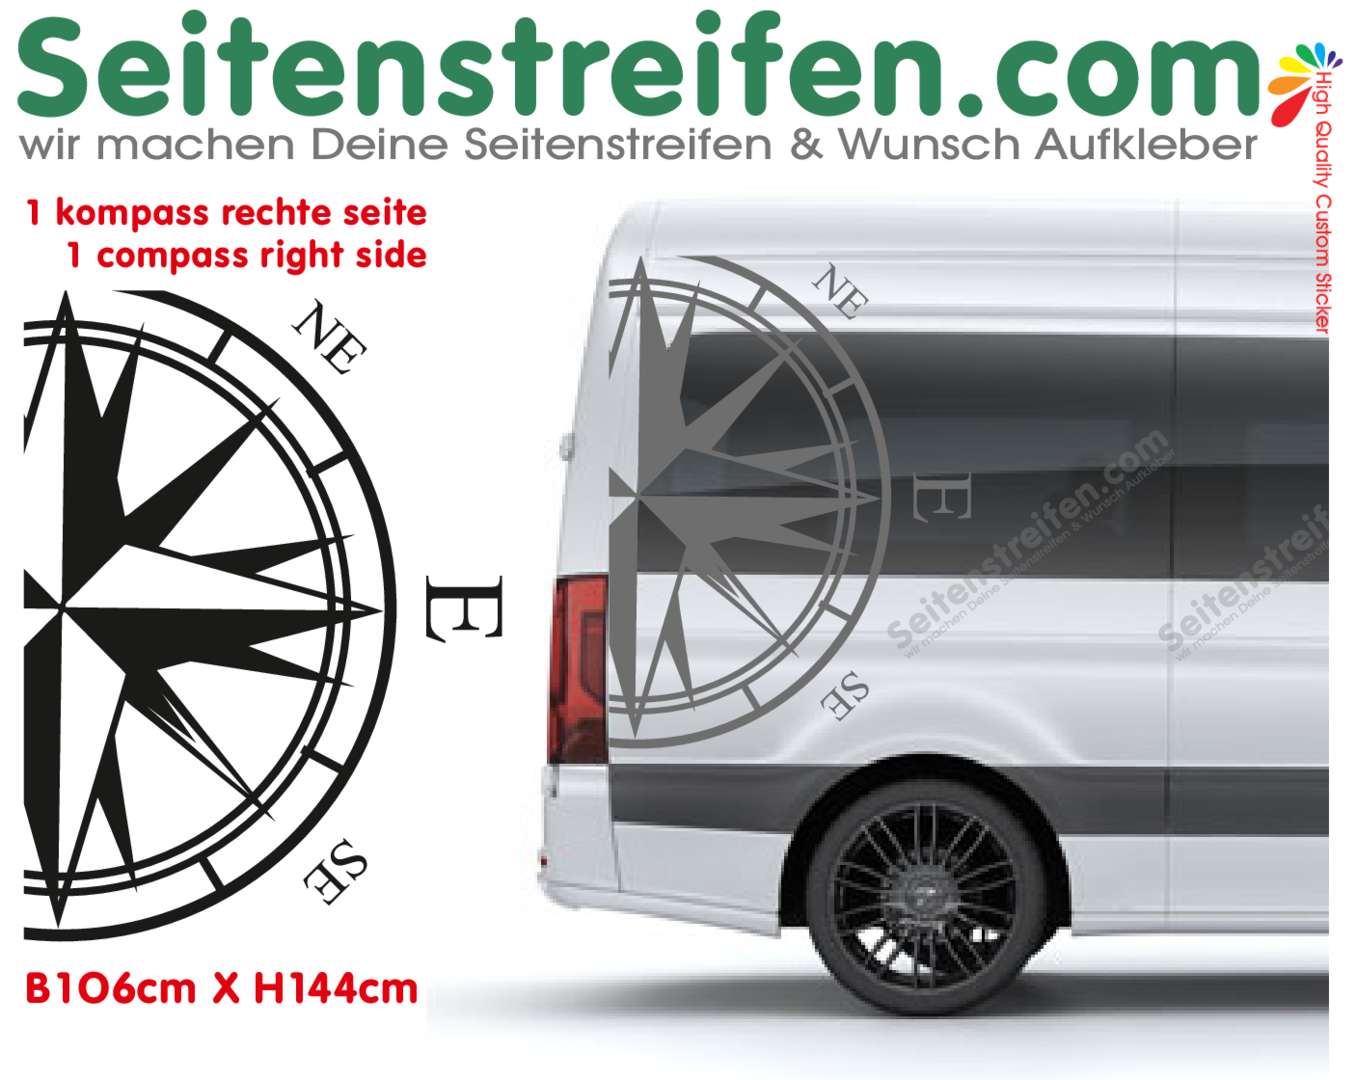 VW Crafter XL Kompass Rechts Aufkleber - Nr.: 4717